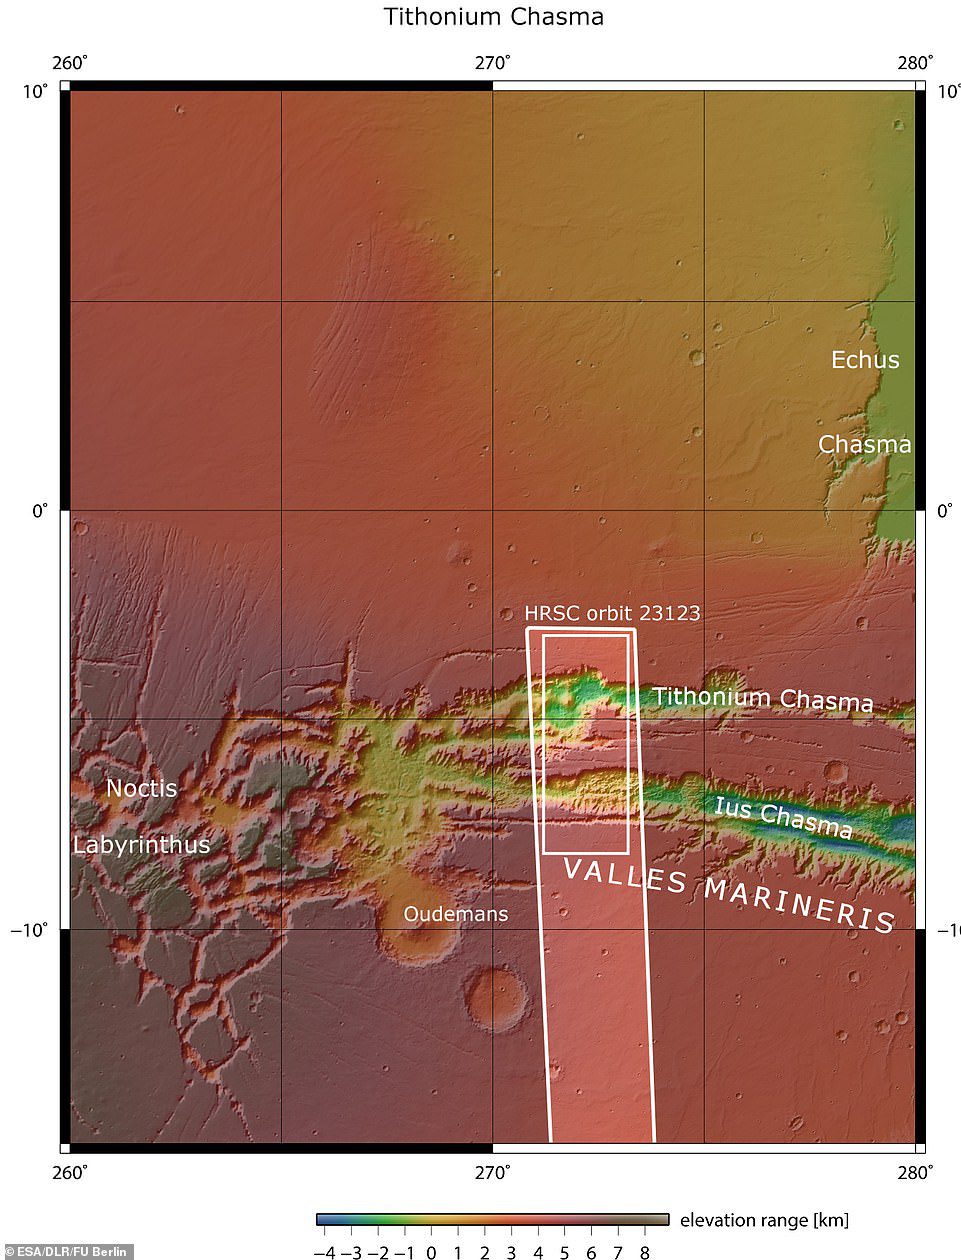 Lus und Tithonium Chasmata sind oben zu sehen.  Der im dunkelweißen Kästchen umrandete Bereich zeigt den Bereich, der von der hochauflösenden Stereokamera Mars Express am 21. April 2022 während der Umlaufbahn aufgenommen wurde.